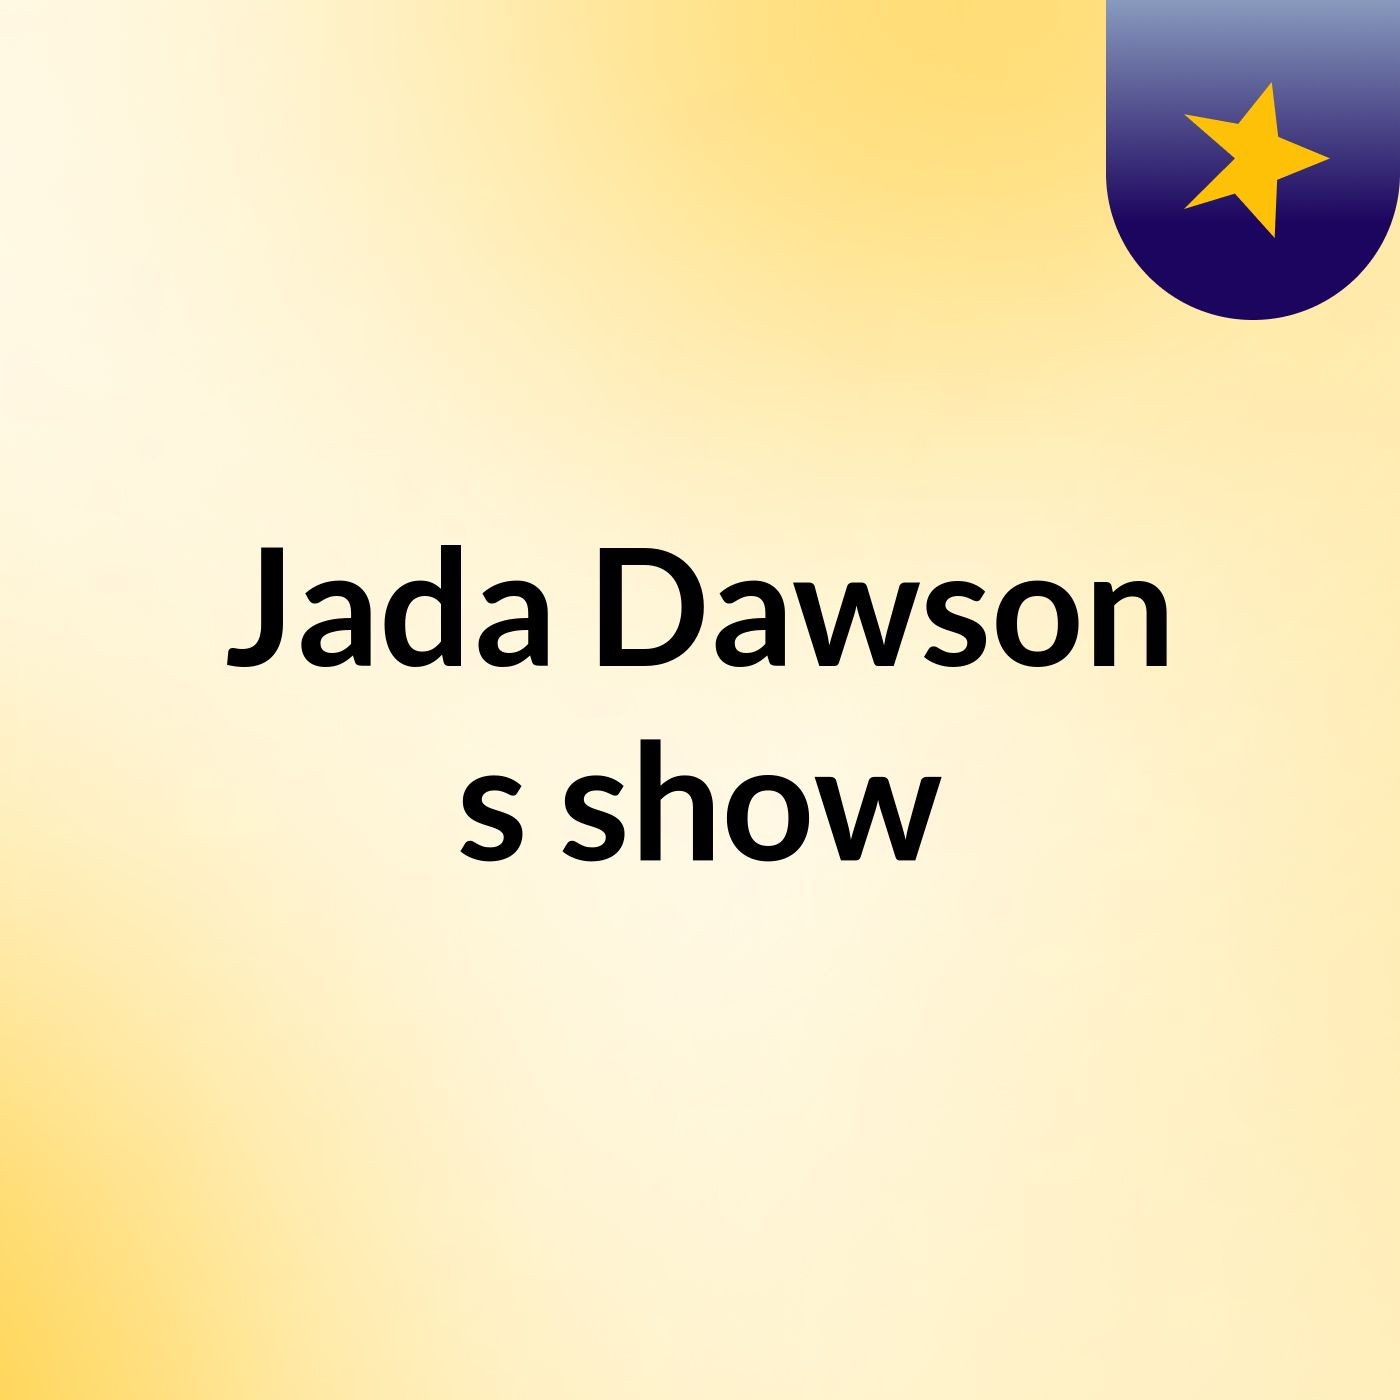 Episode 2 - Jada Dawson's show